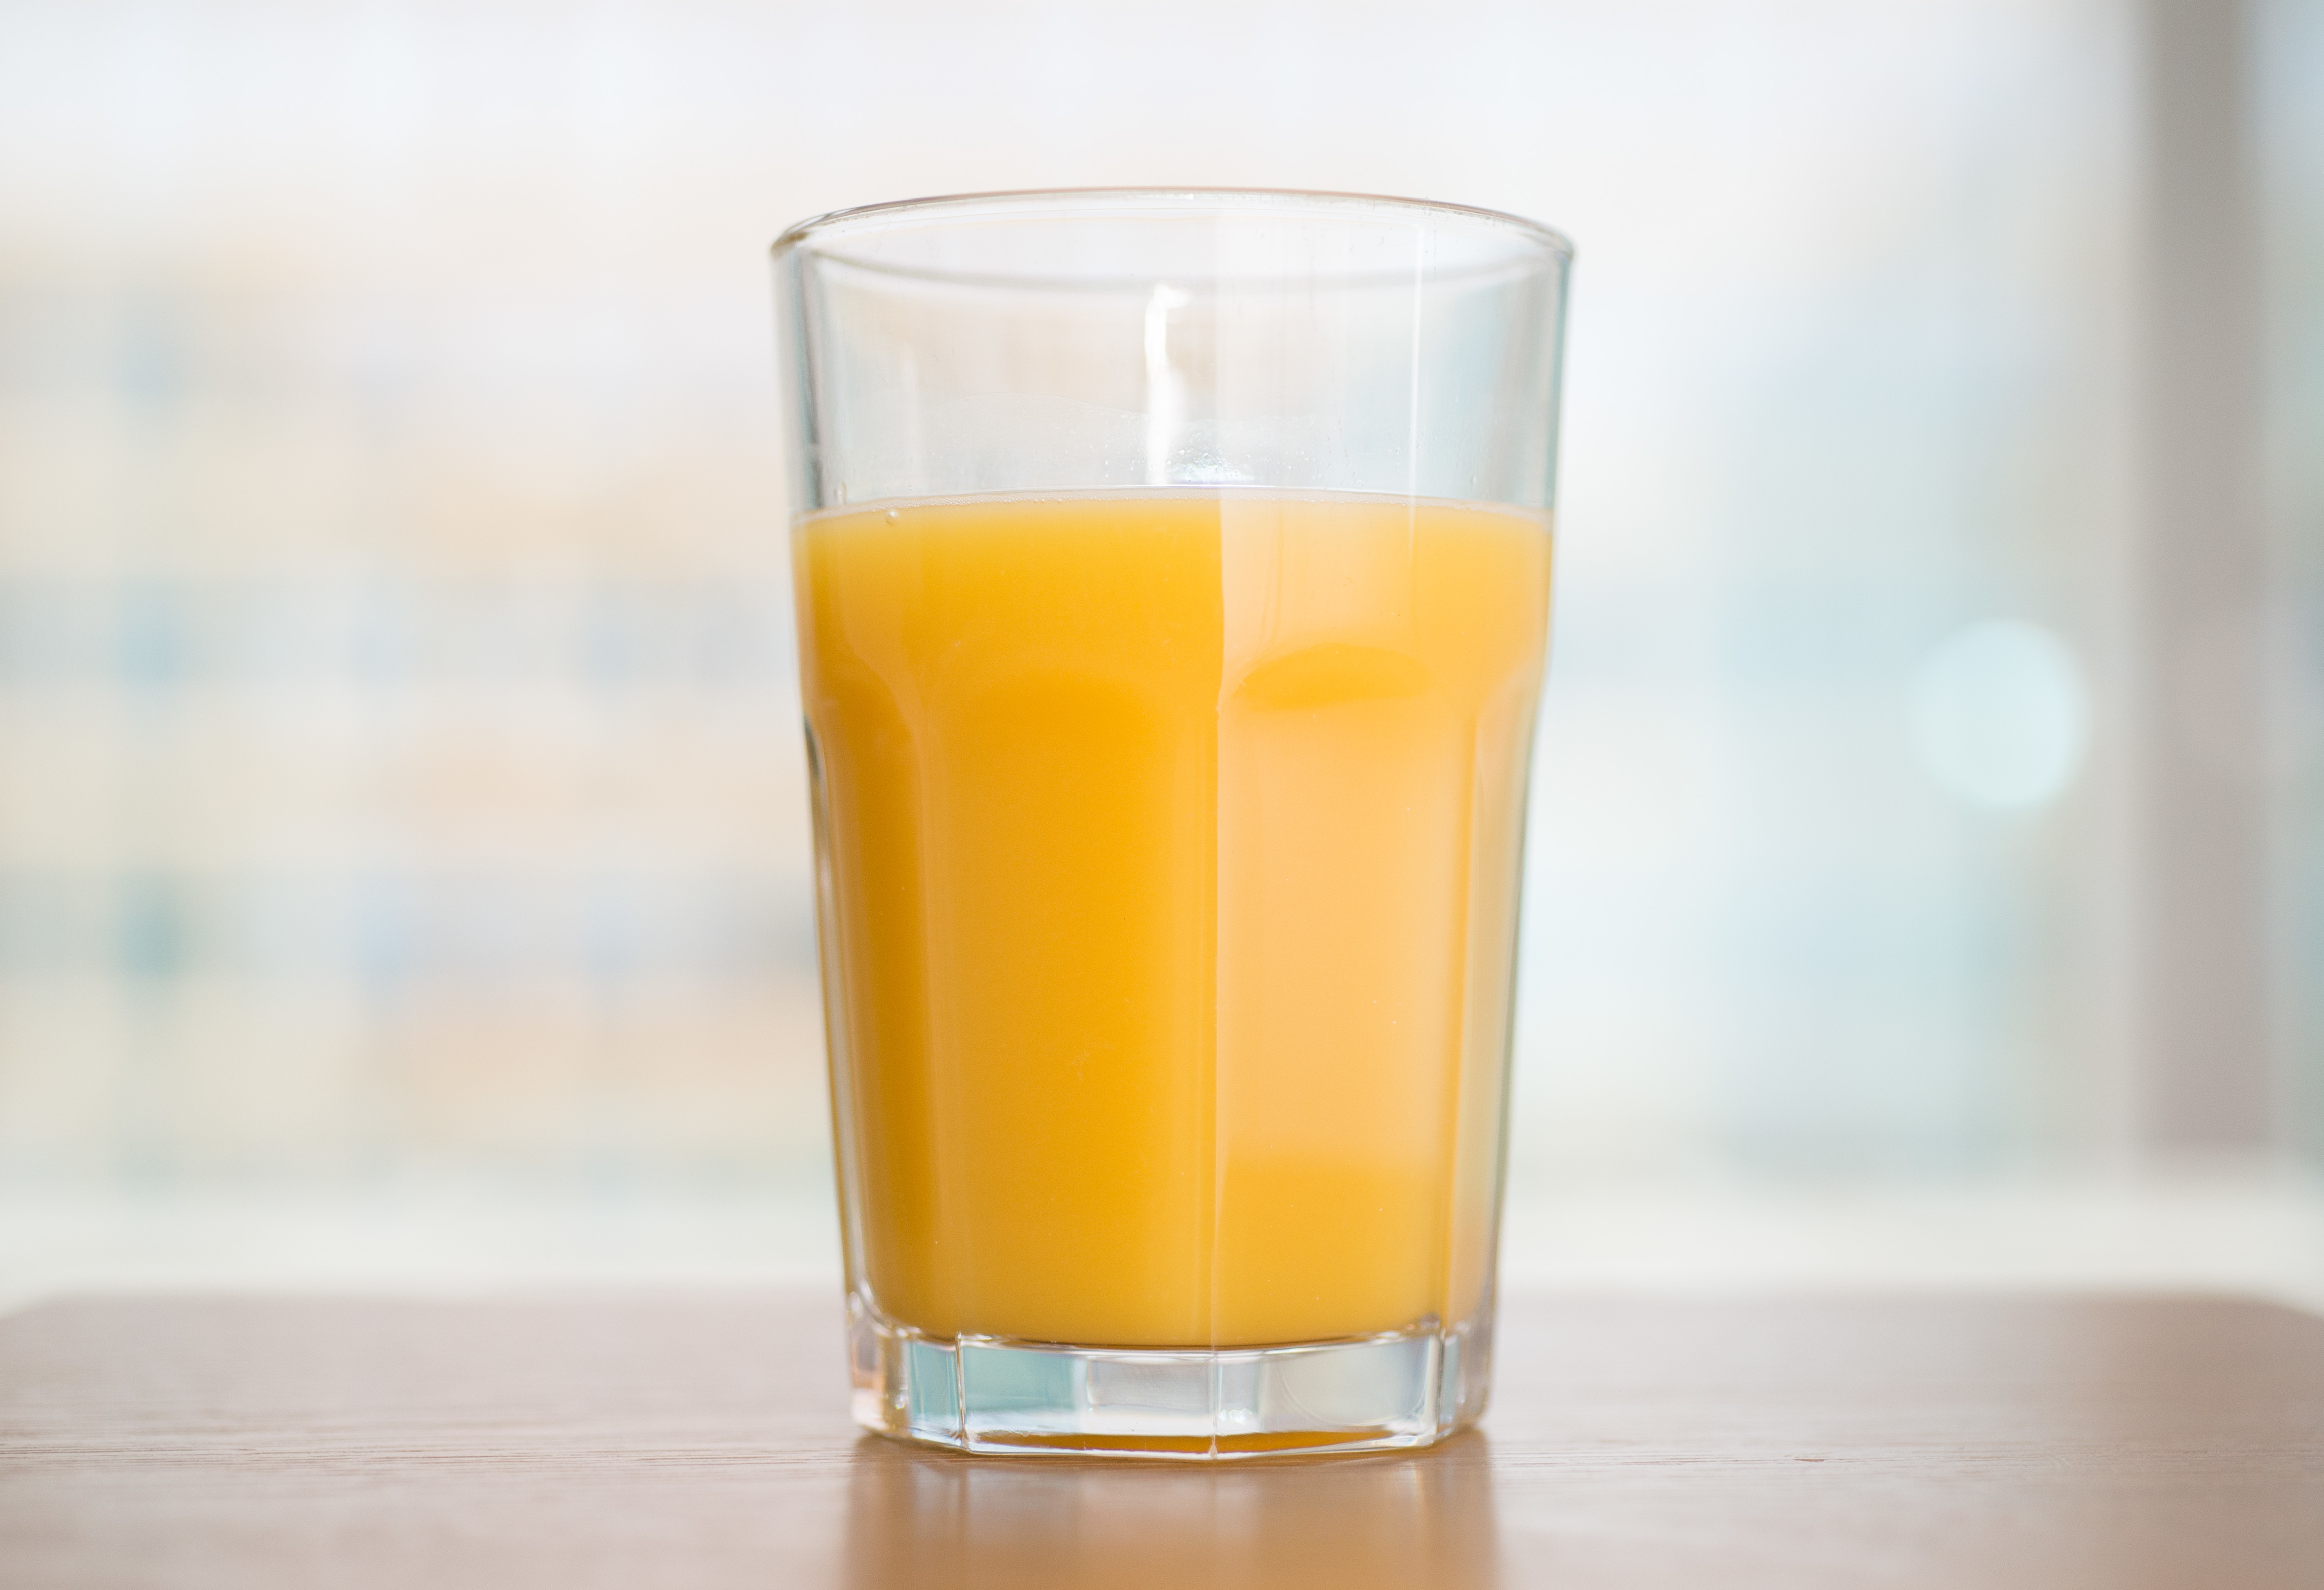 Para cuidar los dientes, es preferible tomar el jugo de naranja del desayuno de a grandes tragos. (Foto Prensa Libre: Andrea Warnecke/dpa).